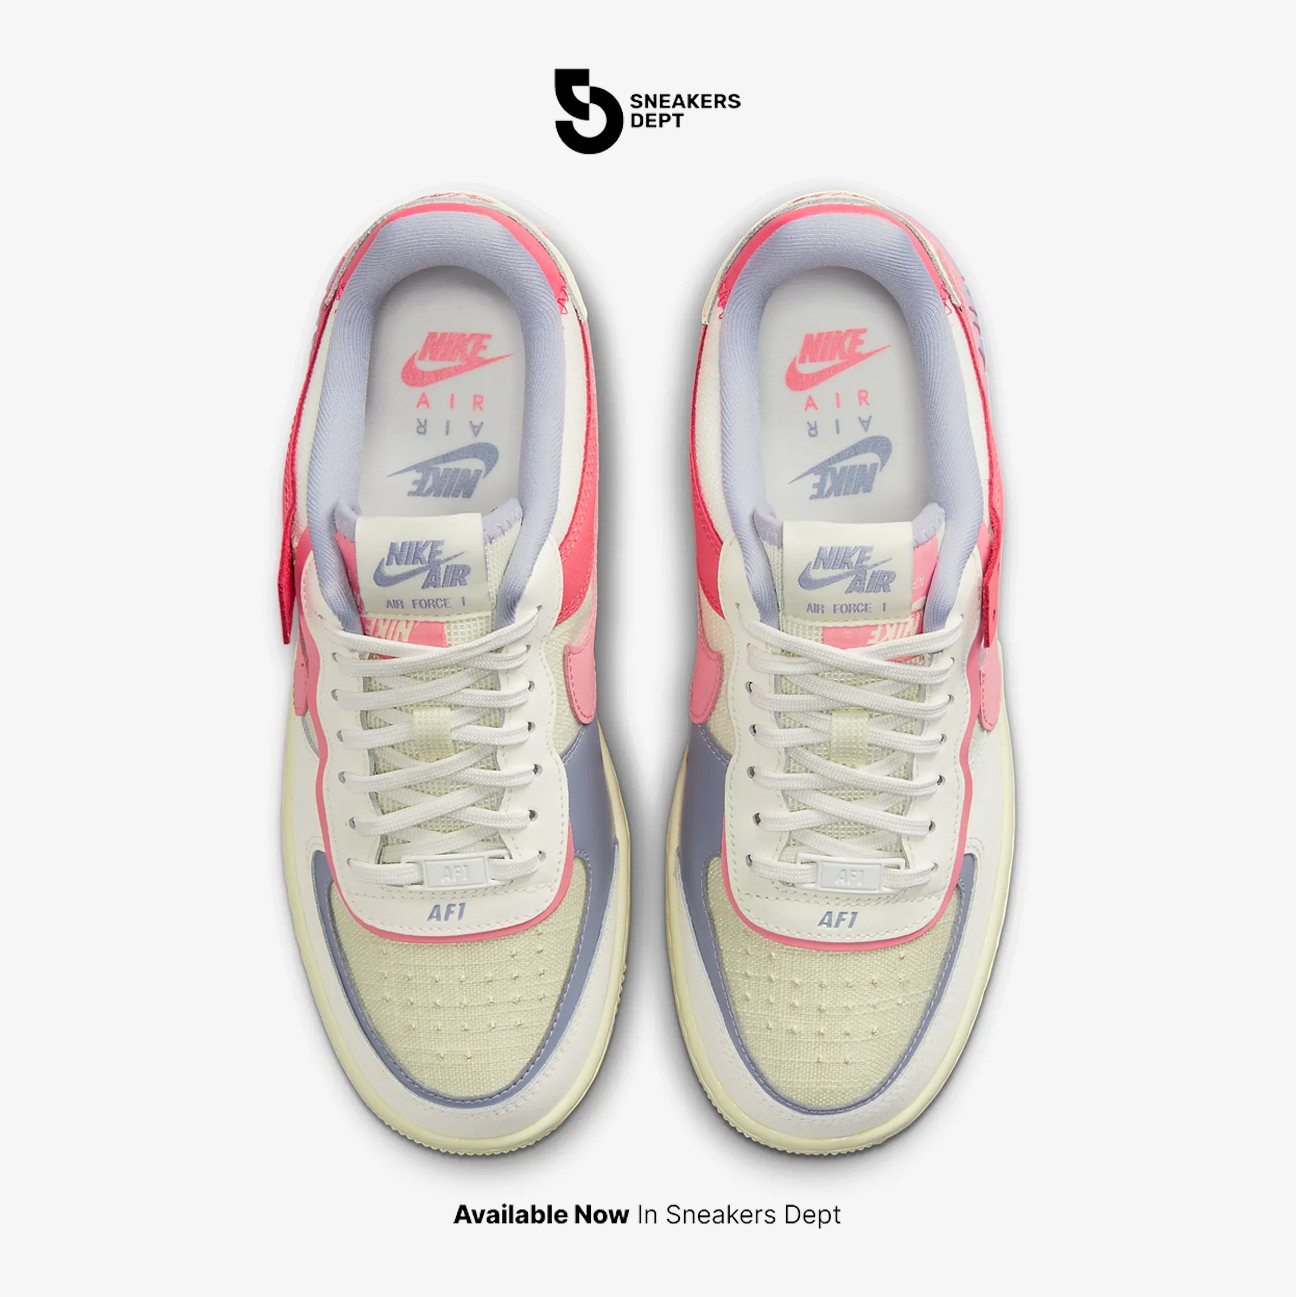 Sepatu Sneakers Wanita NIKE AIR FORCE 1 SHADOW DV7449101 ORIGINAL